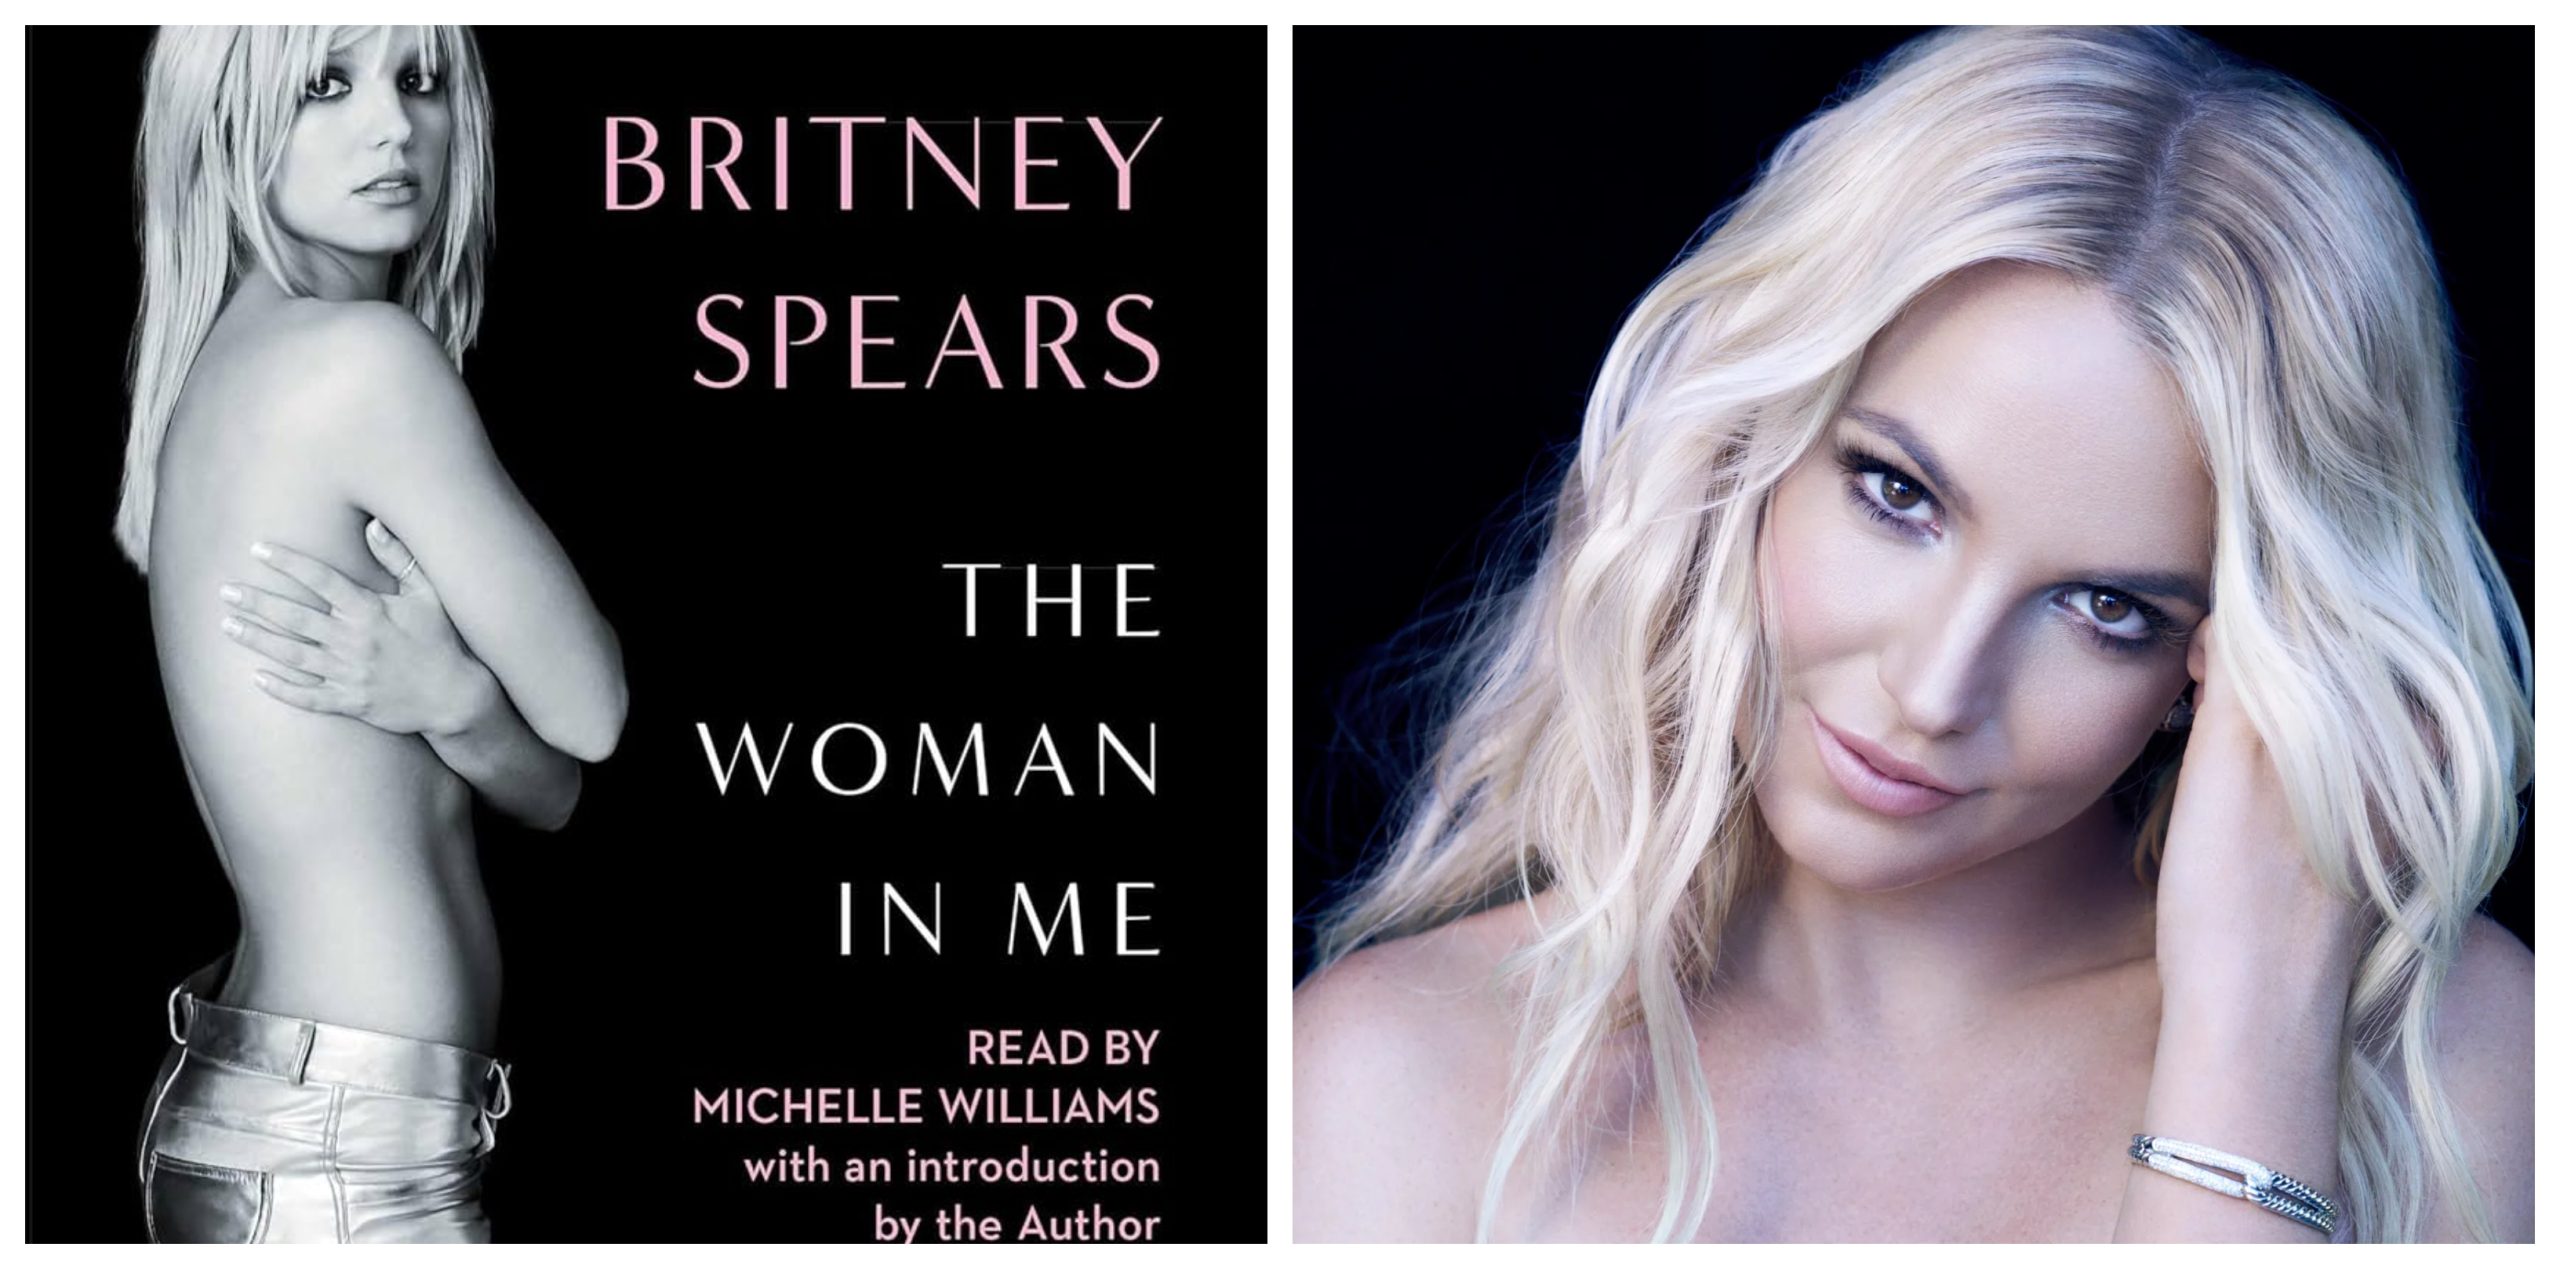 Britney Spears' memoir The Woman in Me